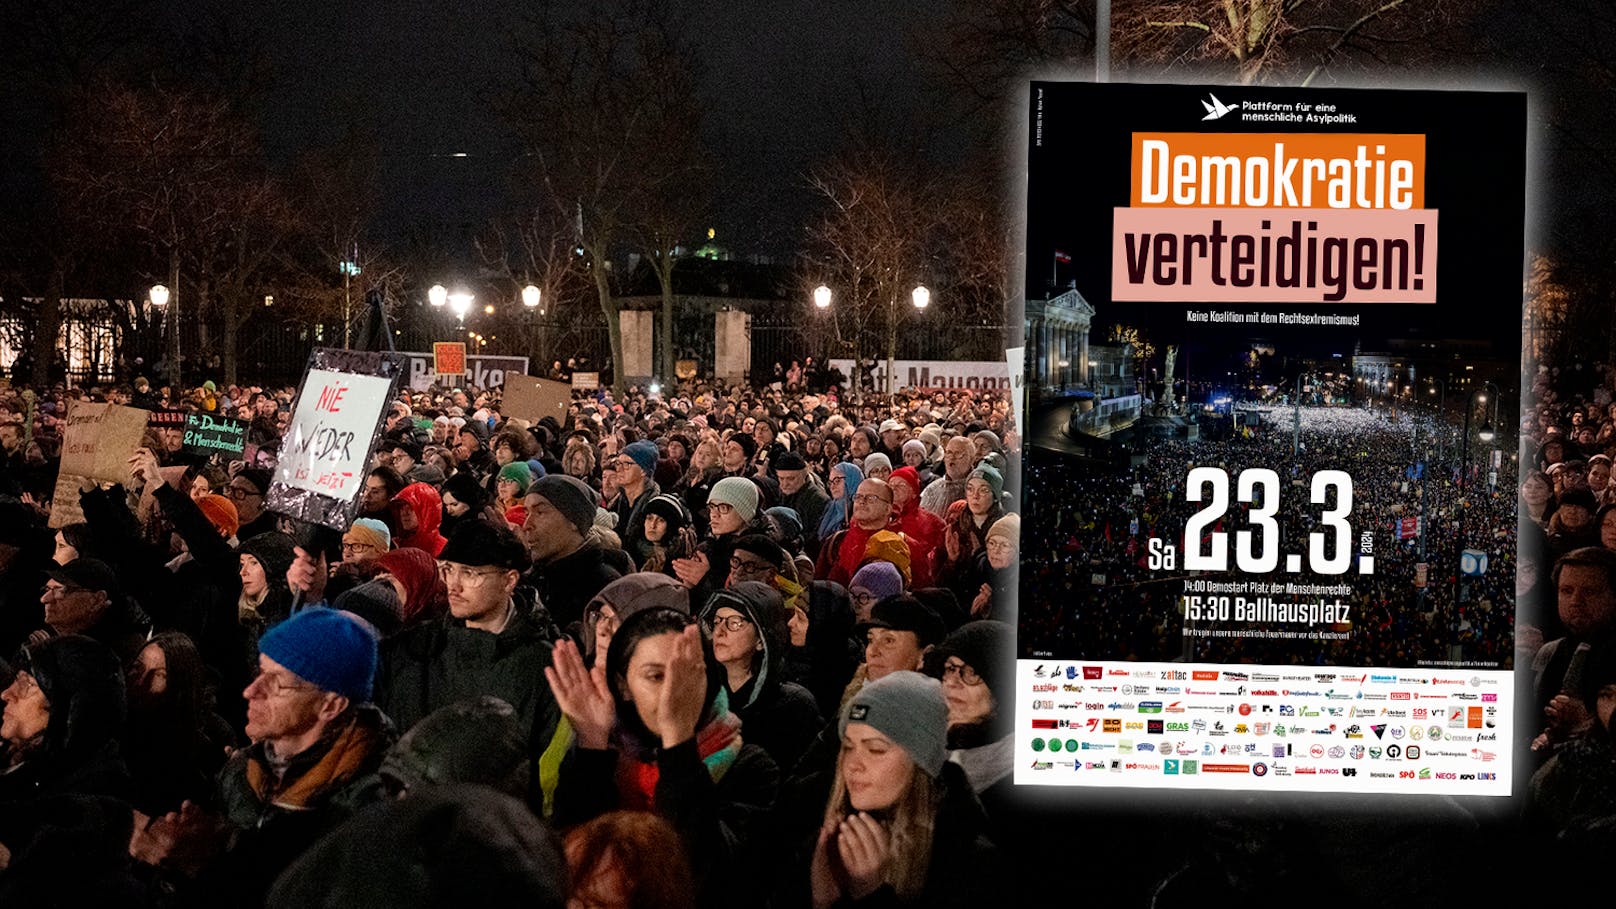 Riesige Anti-FPÖ-Demo am Samstag in Wien geplant